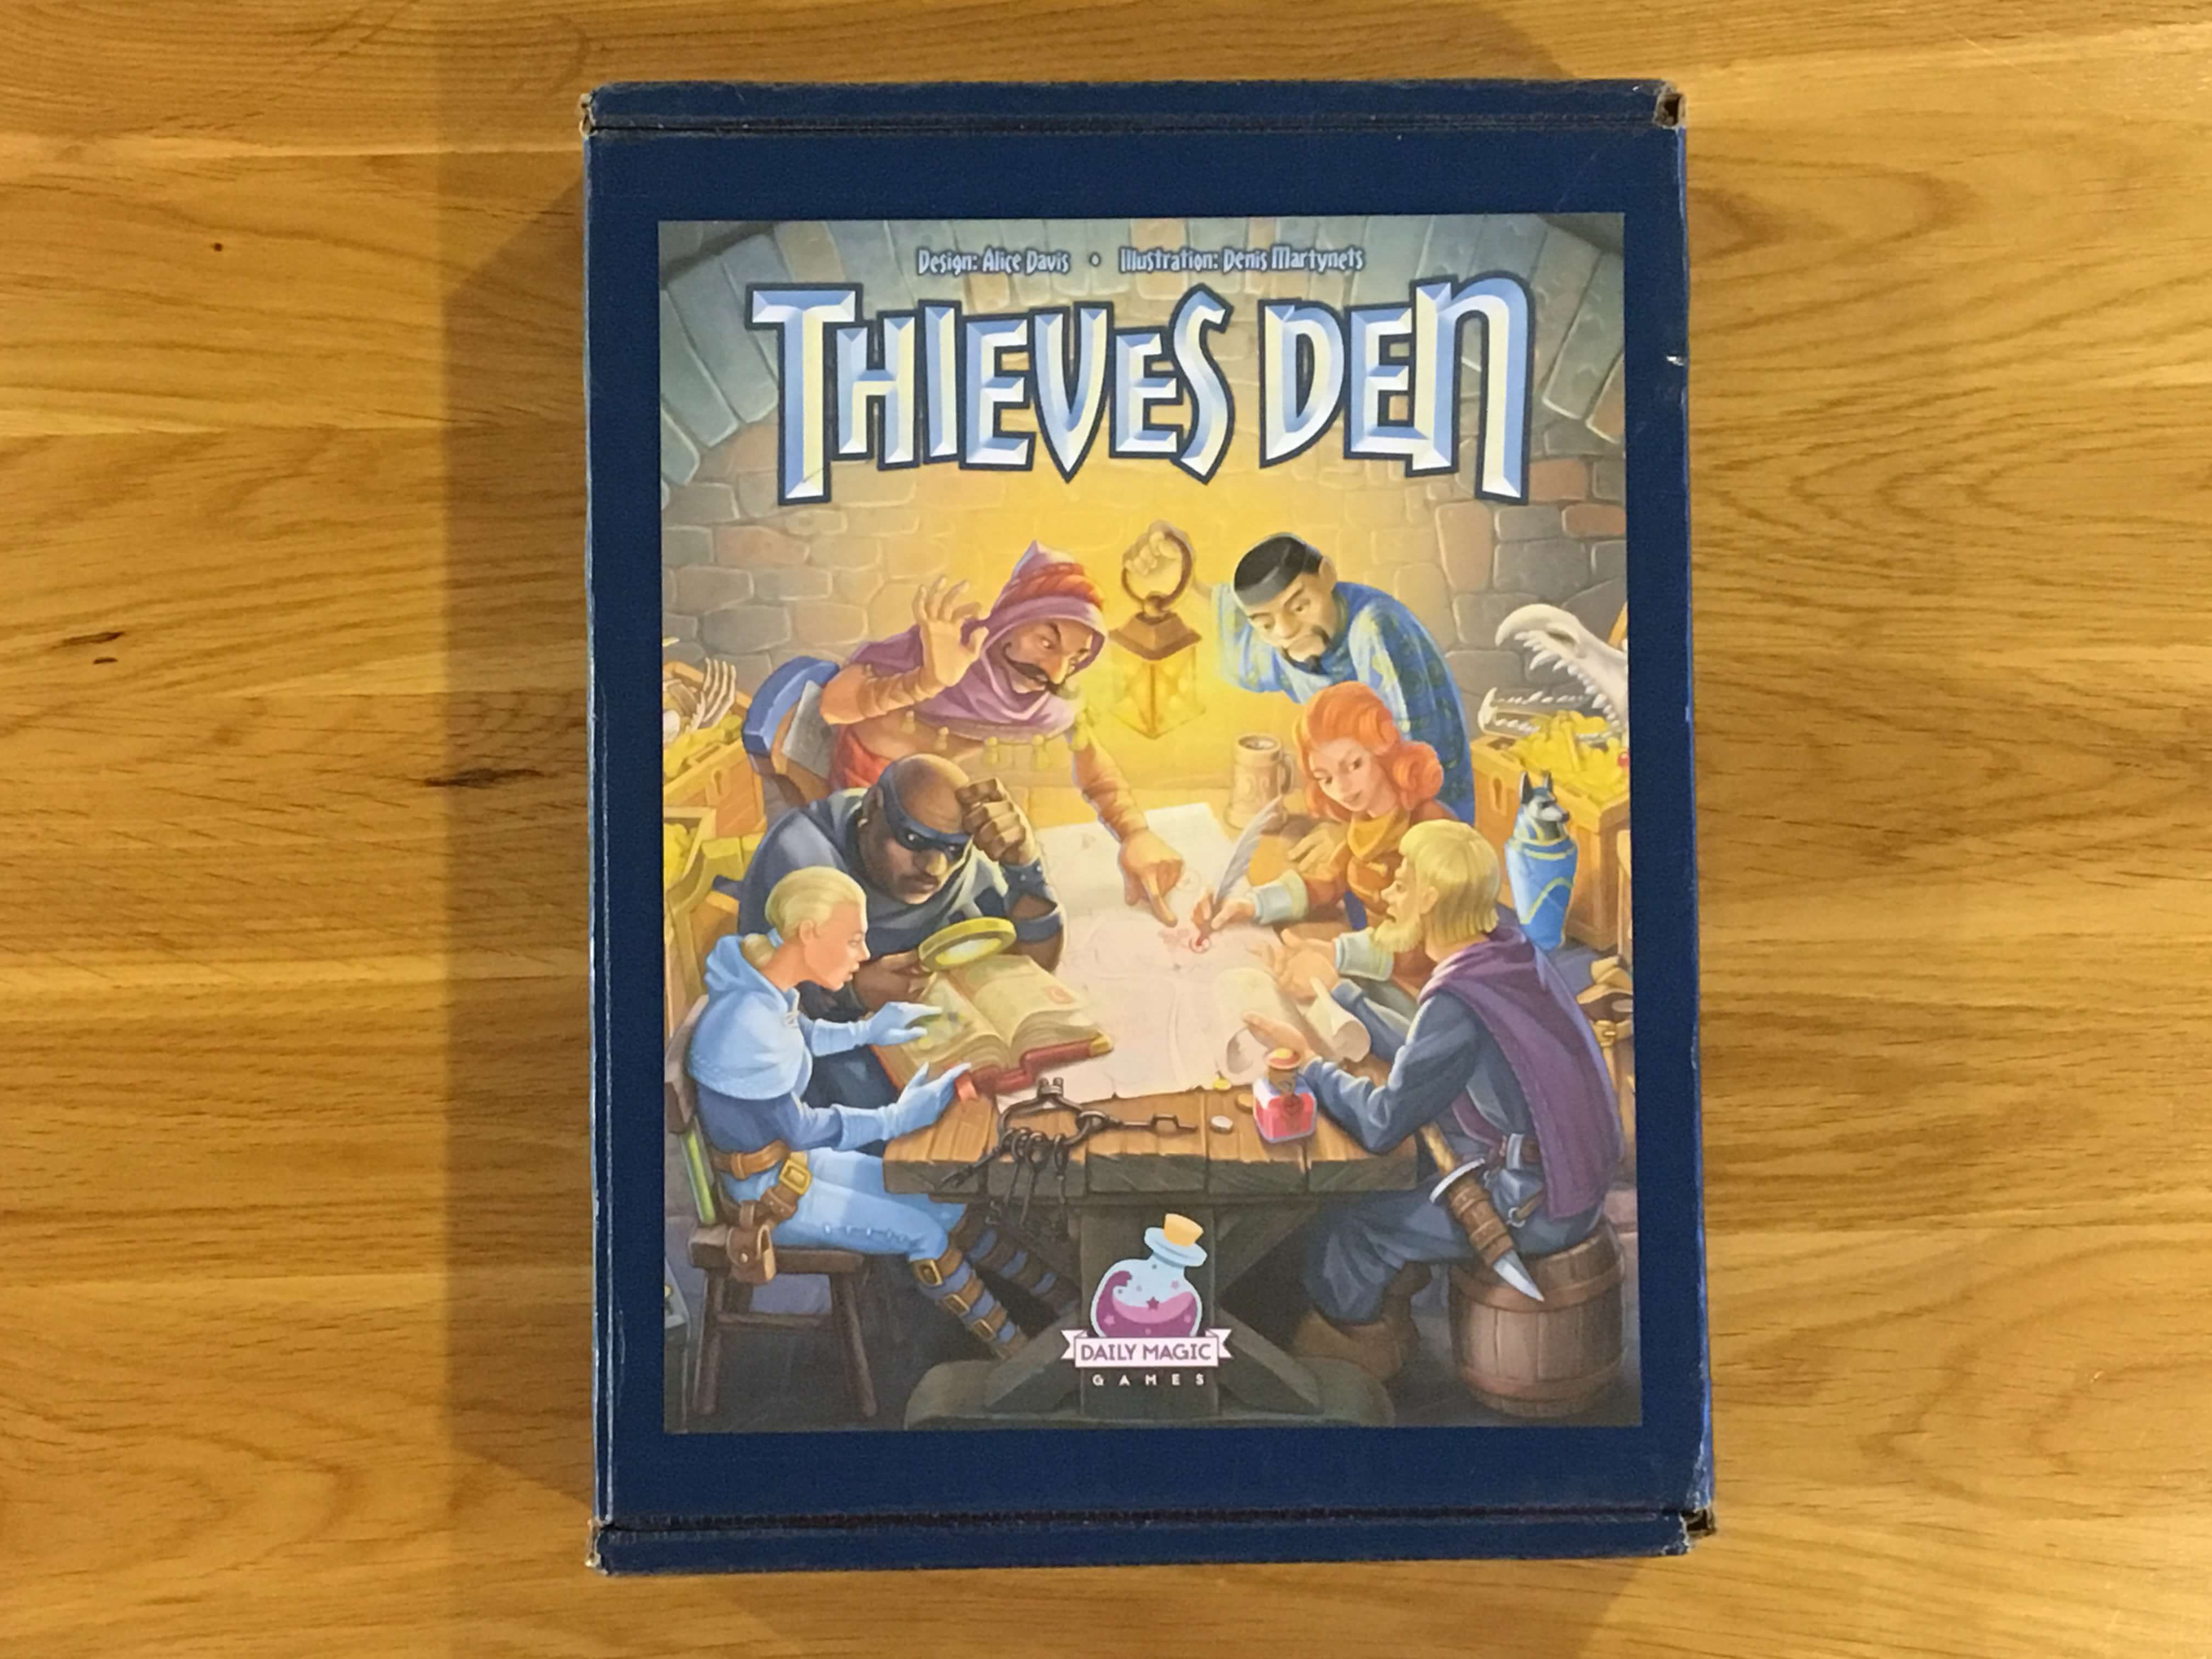 Thieves Den